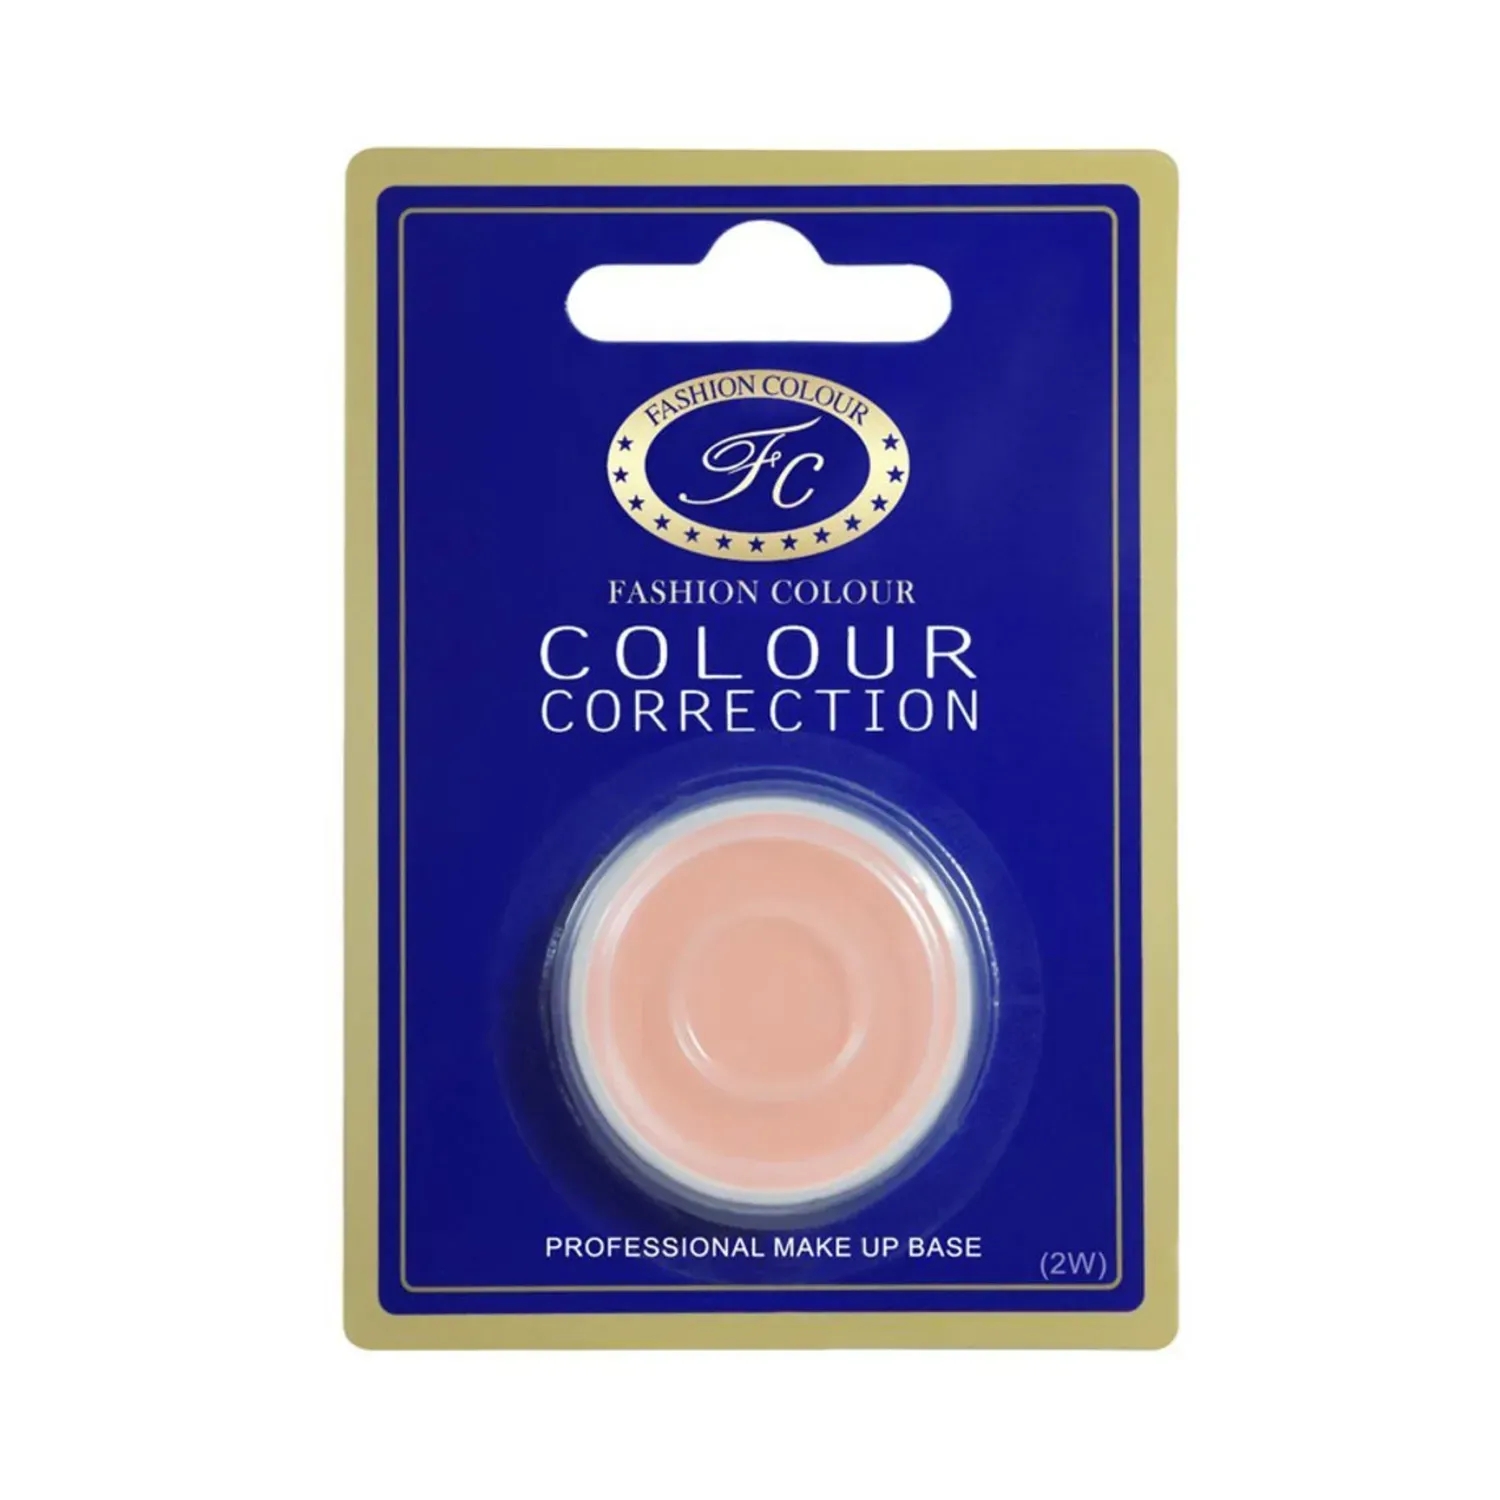 Fashion Colour | Fashion Colour Single Packing Colour Correction Makeup Base Concealer - FS26 (3.5g)